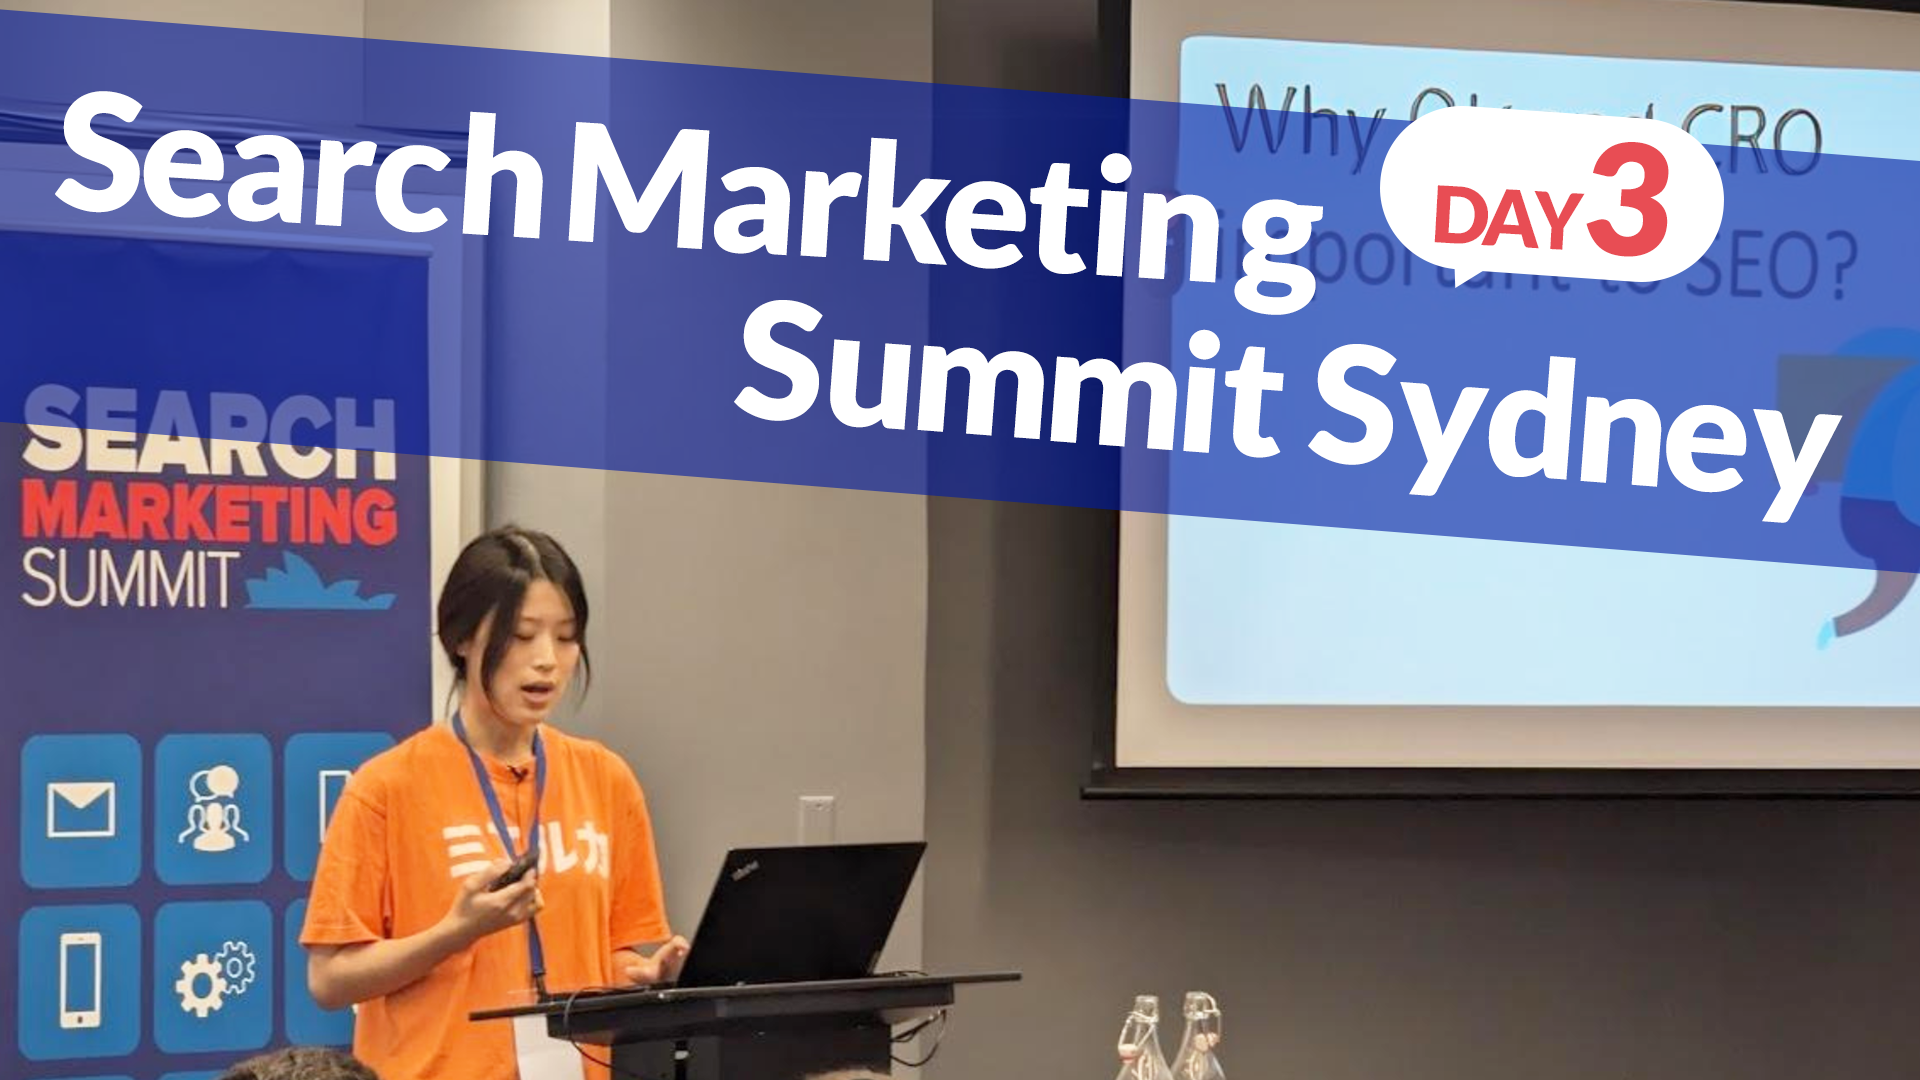 Search Marketing Summit Sydney (Day3)